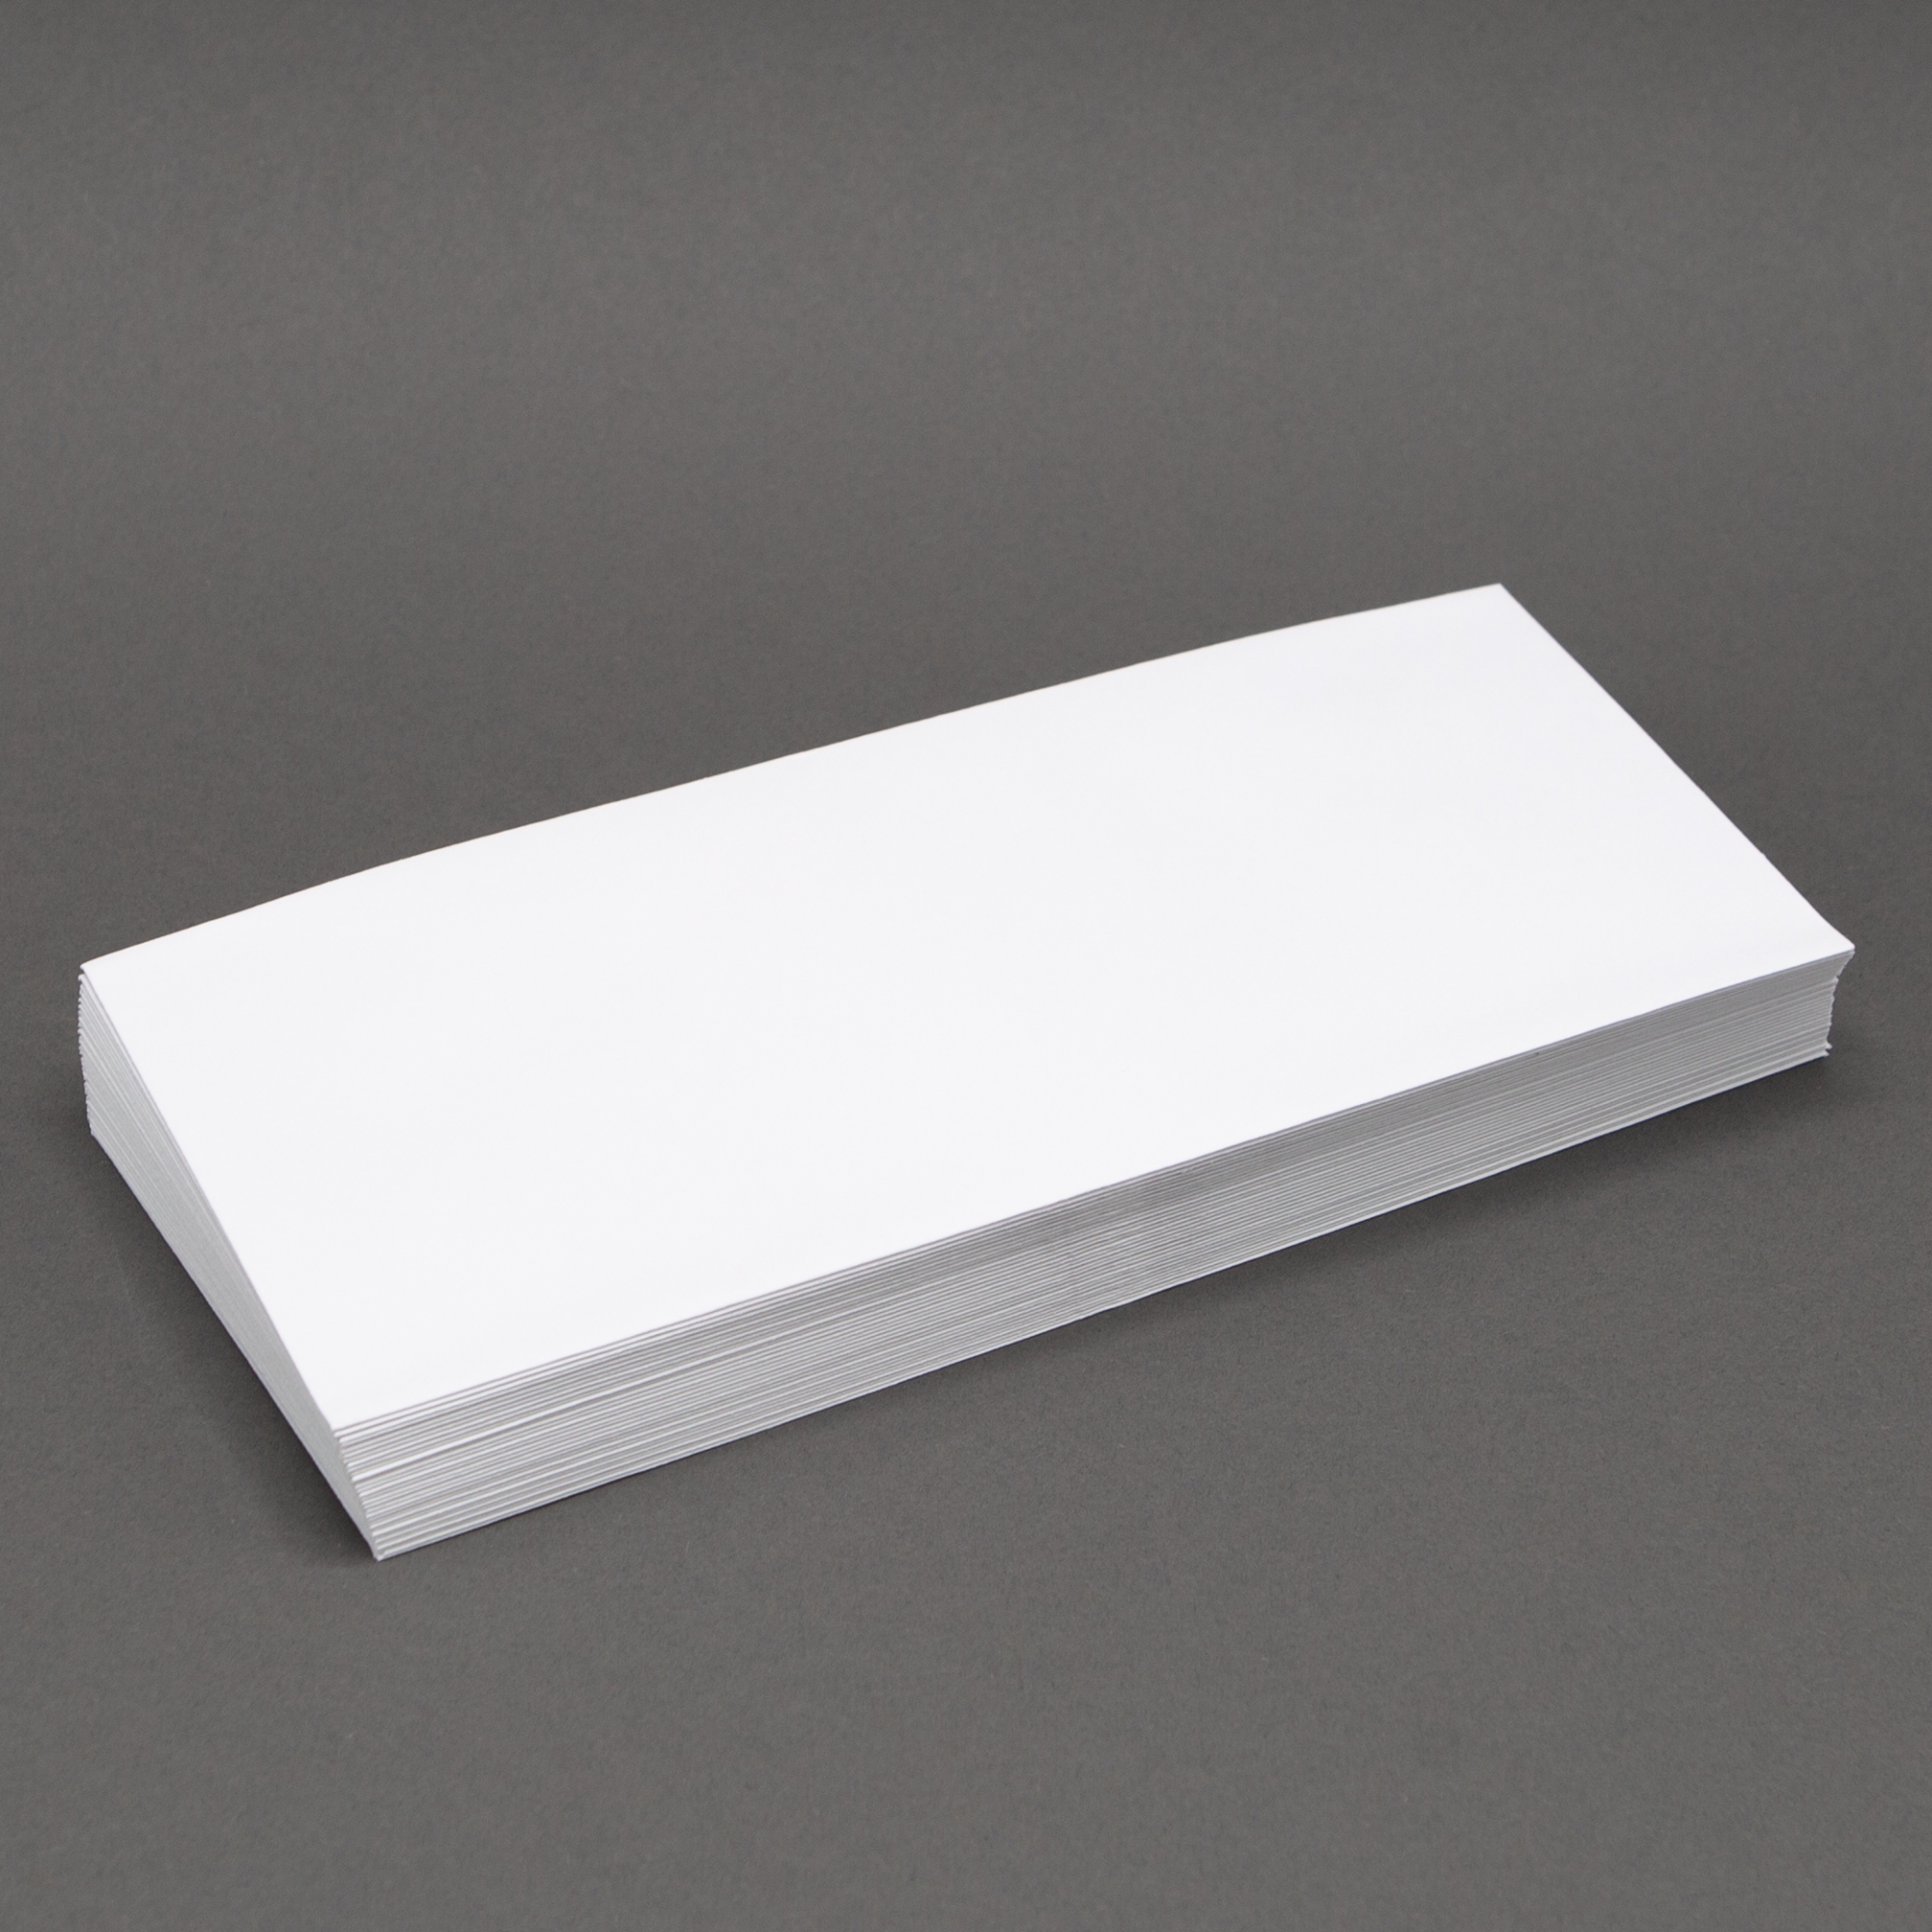 Ivory Envelopes - No. 10 Commercial (4 1/8 x 9 1/2) 24 lb Bond Wove 100%  Cotton